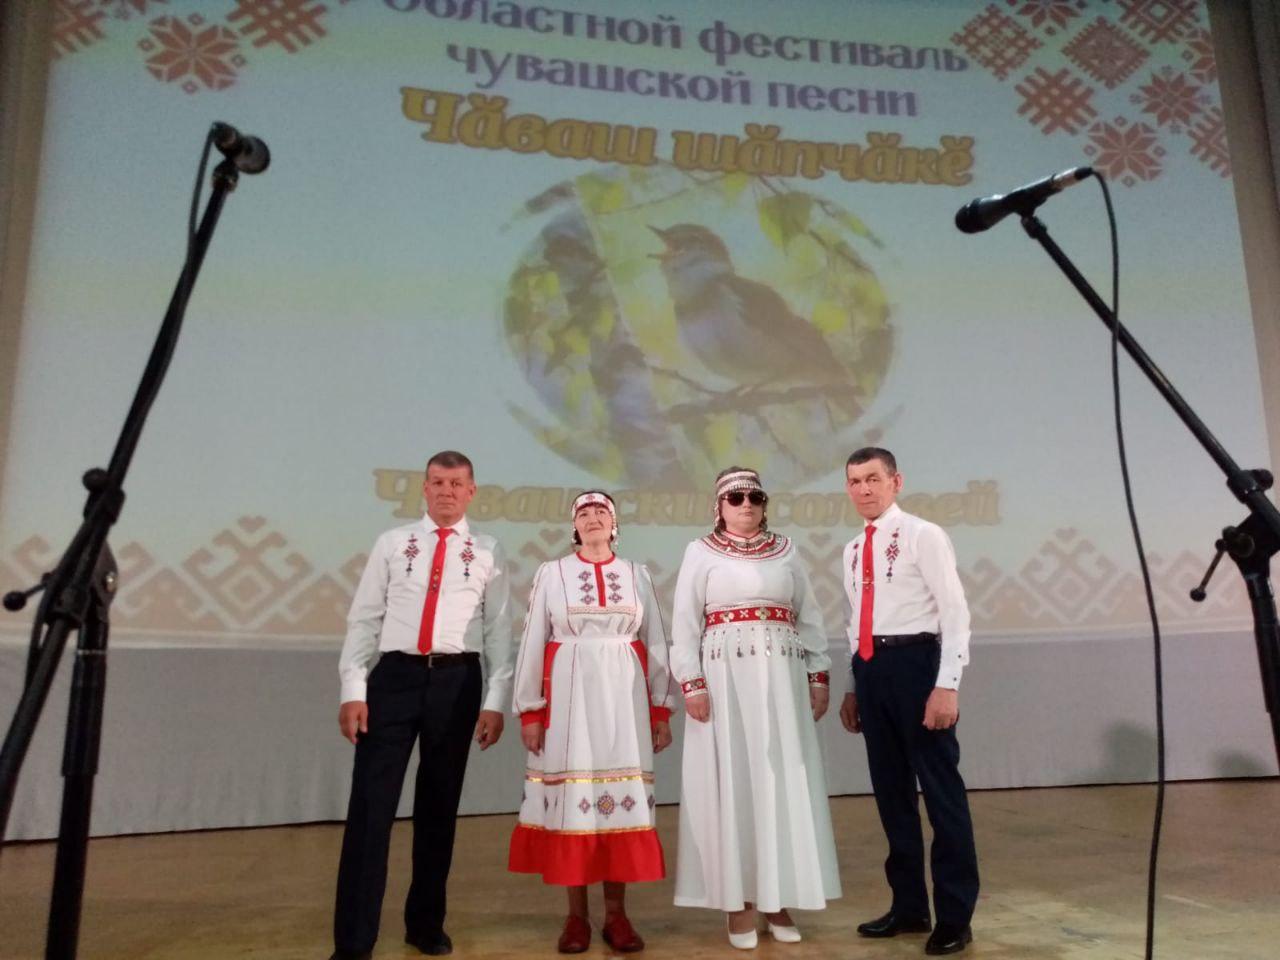 Областной фестиваль чувашской песни Чаваш шапчаке.